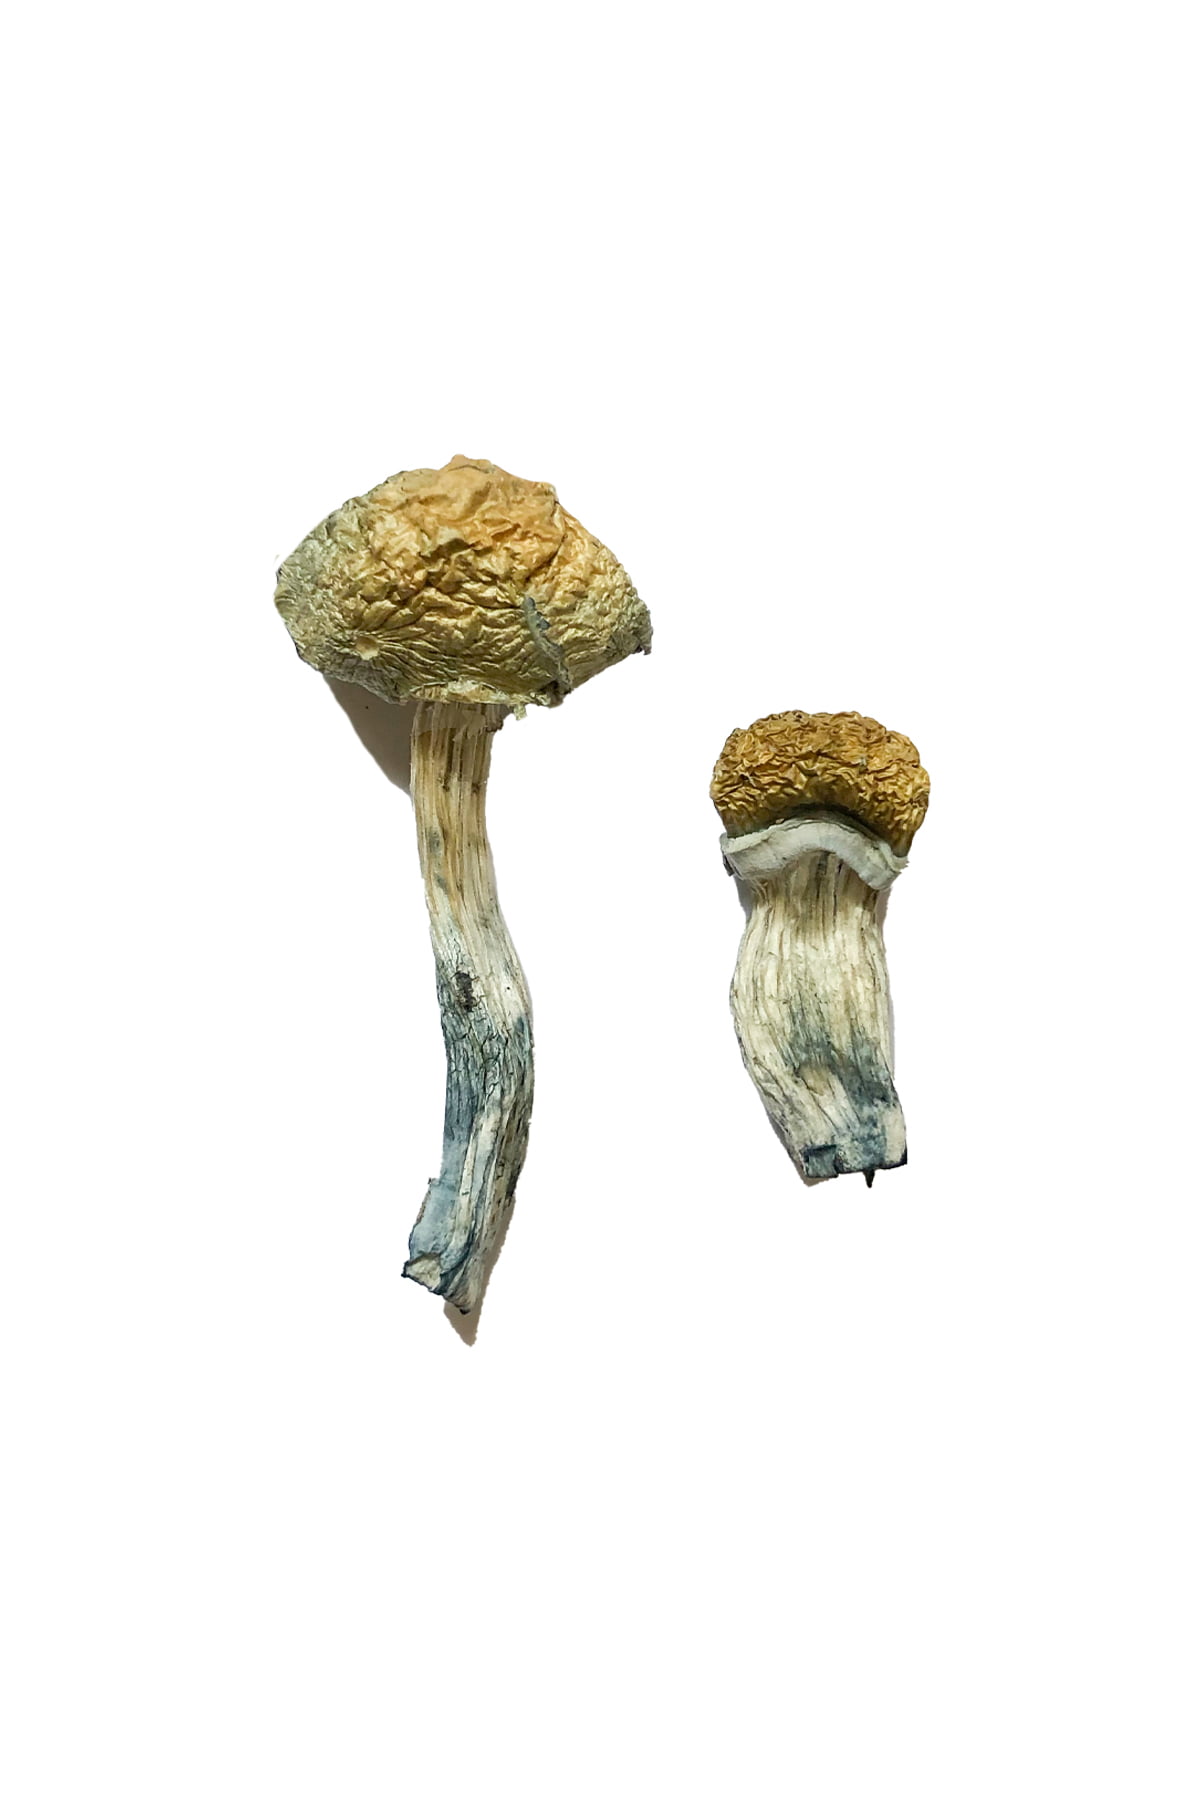 Buy Mazatapec Magic Mushrooms online In Canada